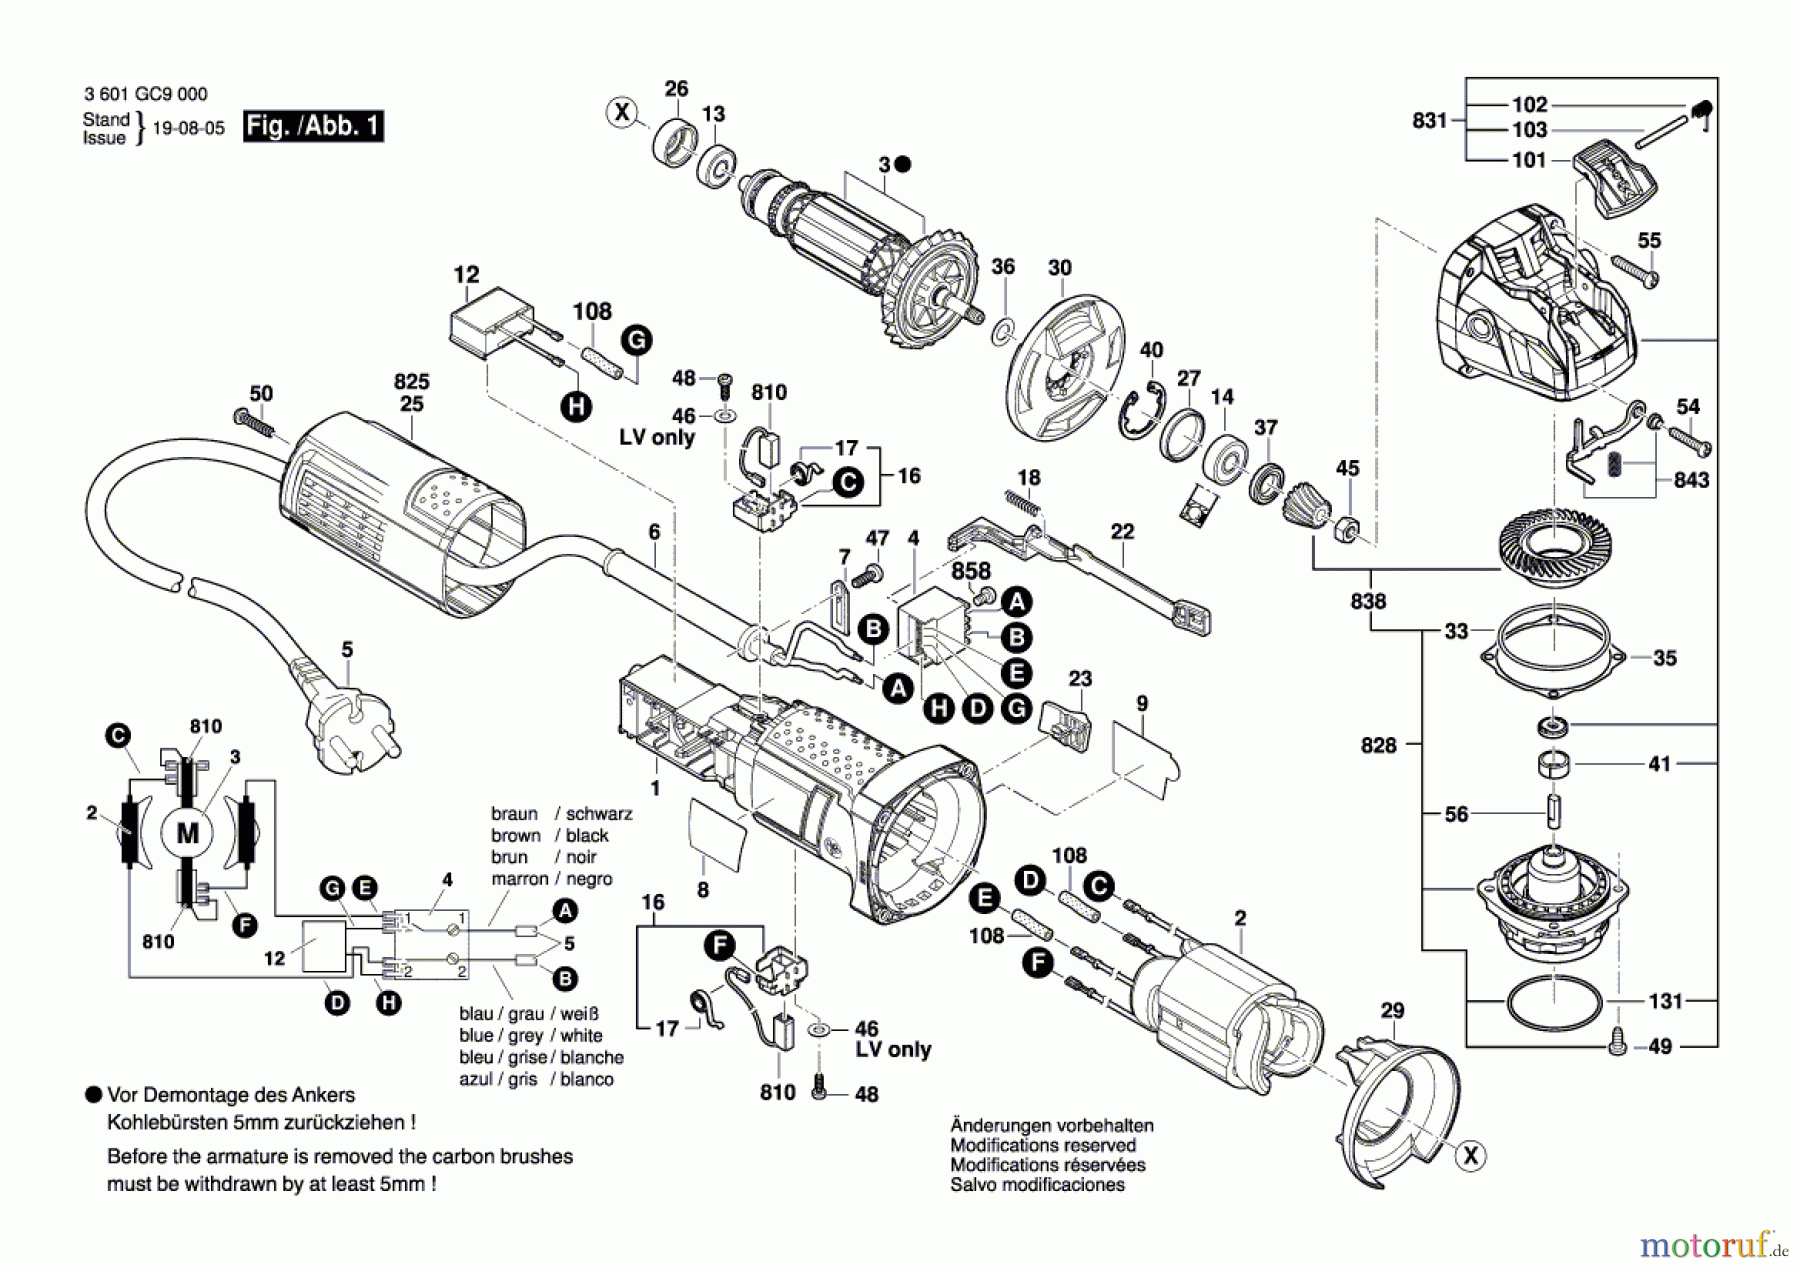  Bosch Werkzeug Winkelschleifer GWX 750-125 Seite 1